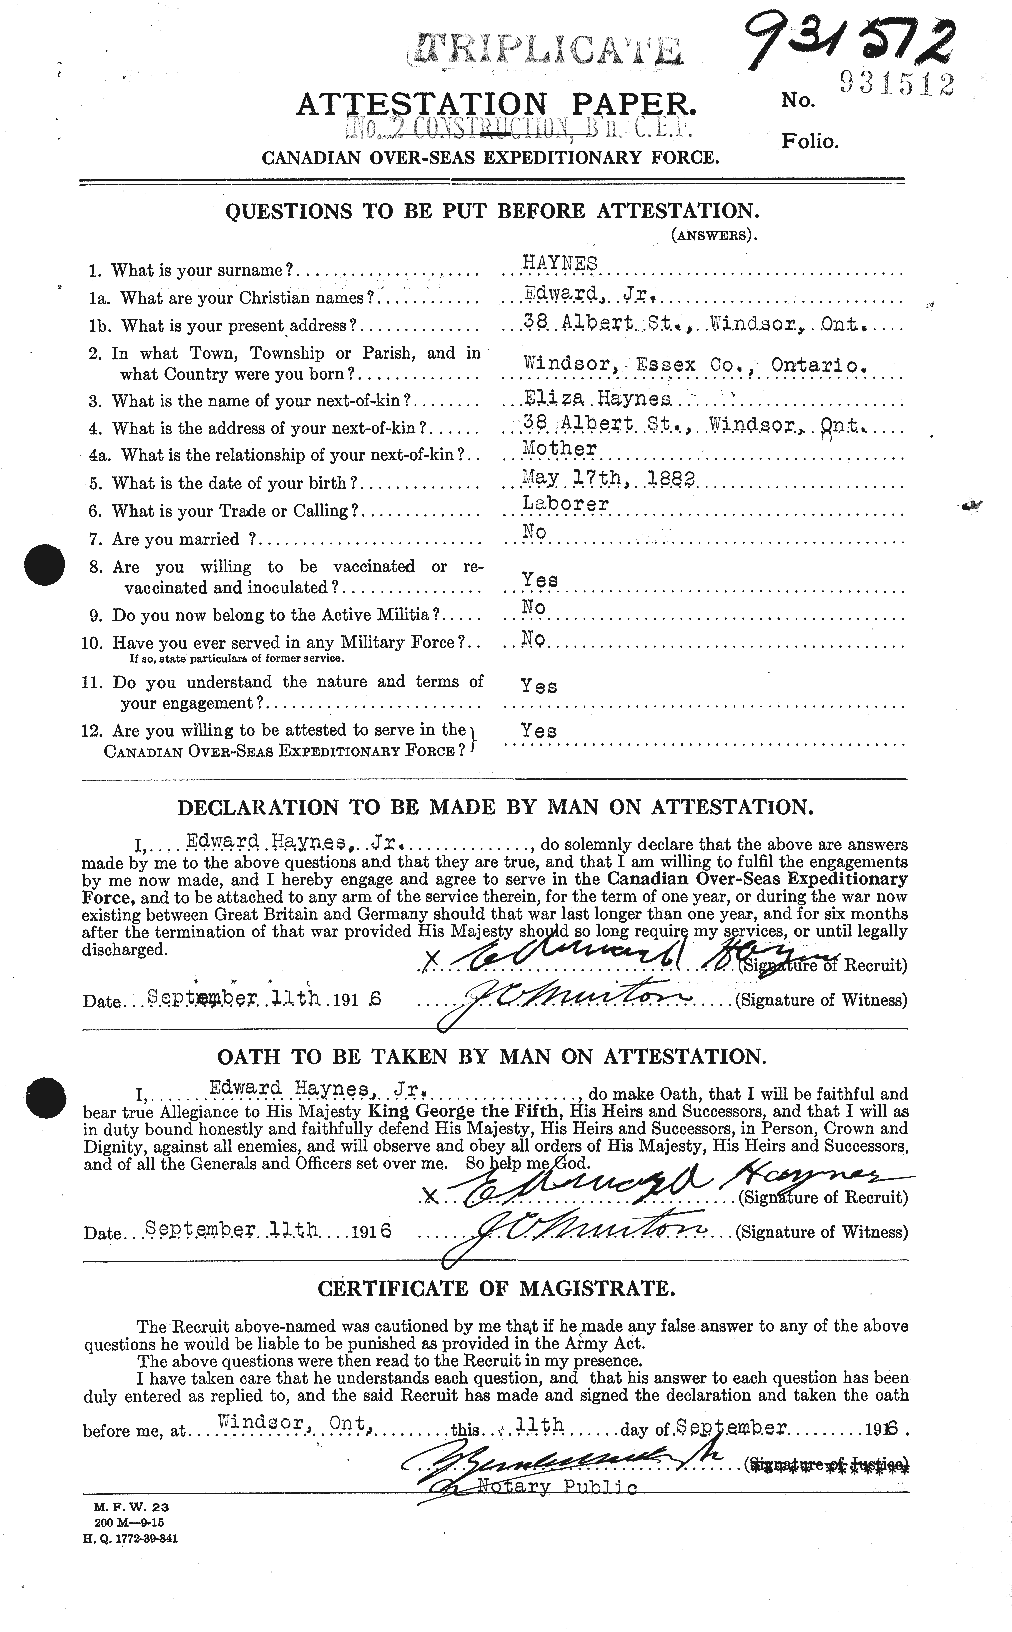 Dossiers du Personnel de la Première Guerre mondiale - CEC 384340a